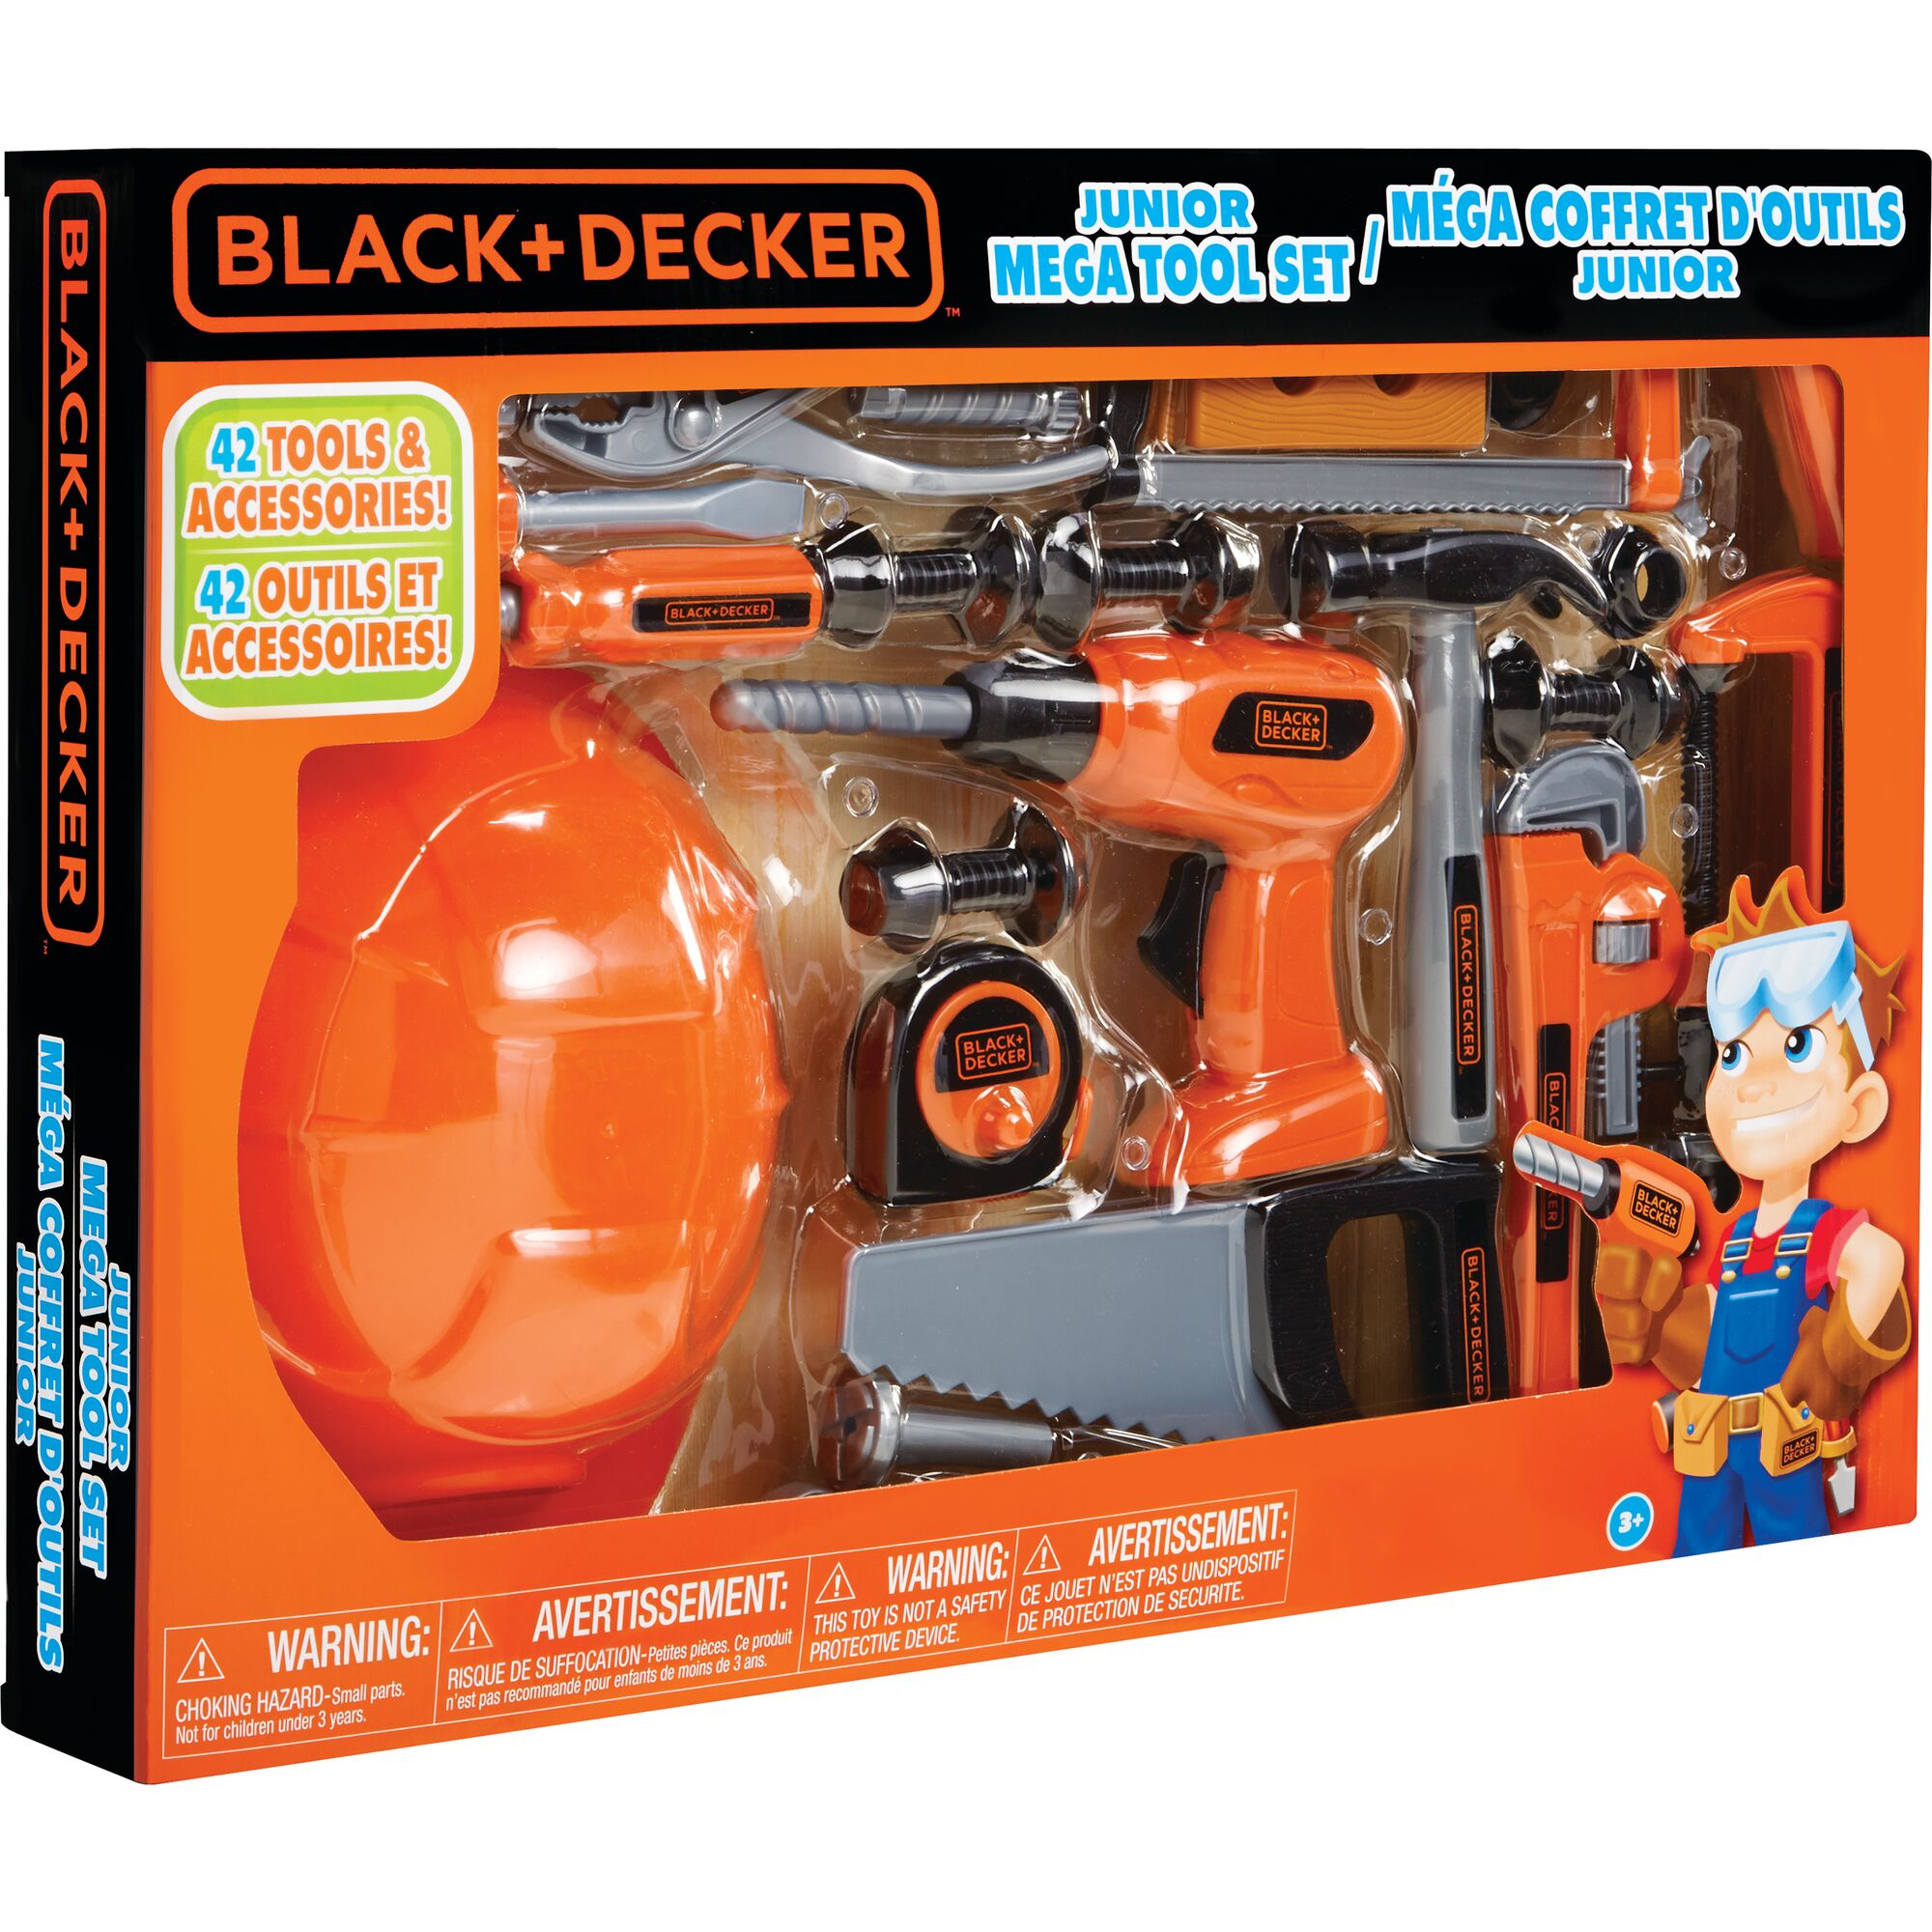 Black & Decker Junior Deluxe Tool Playset 